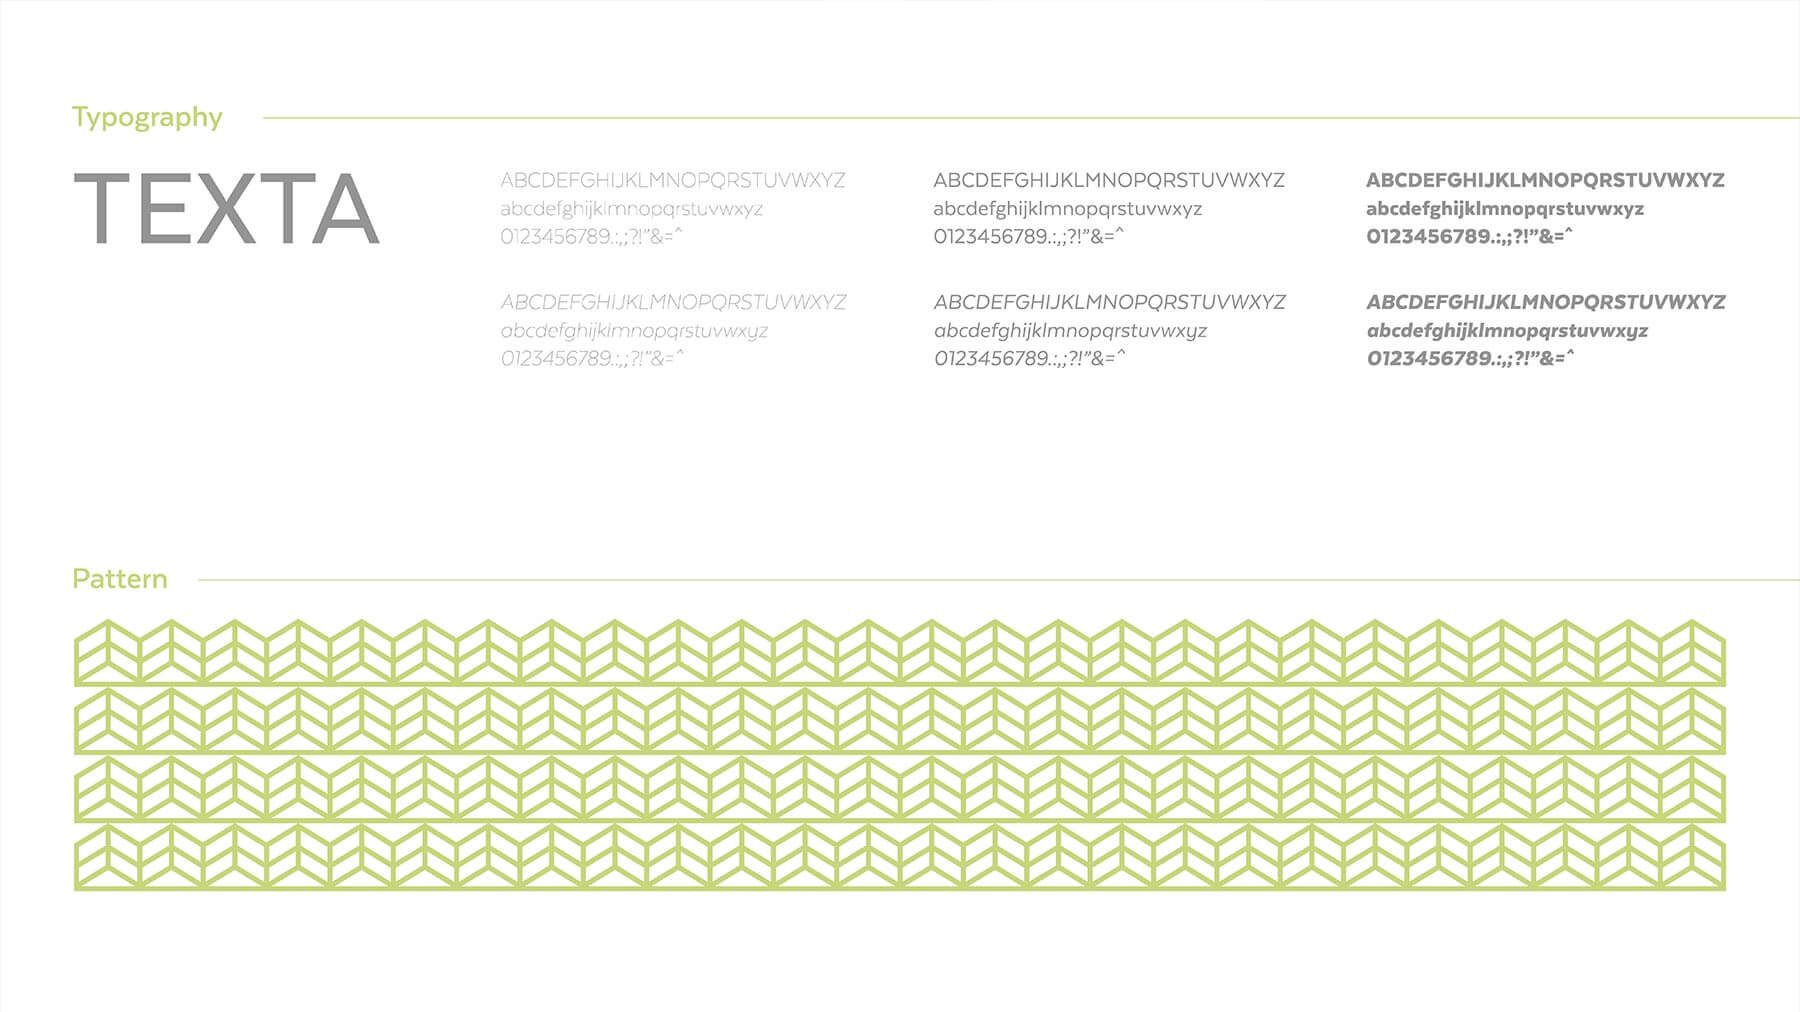 Logo e brand identity di Meti realizzato da SEBA! grafico di Gravellona Toce nel VCO della tipografia e del pattern